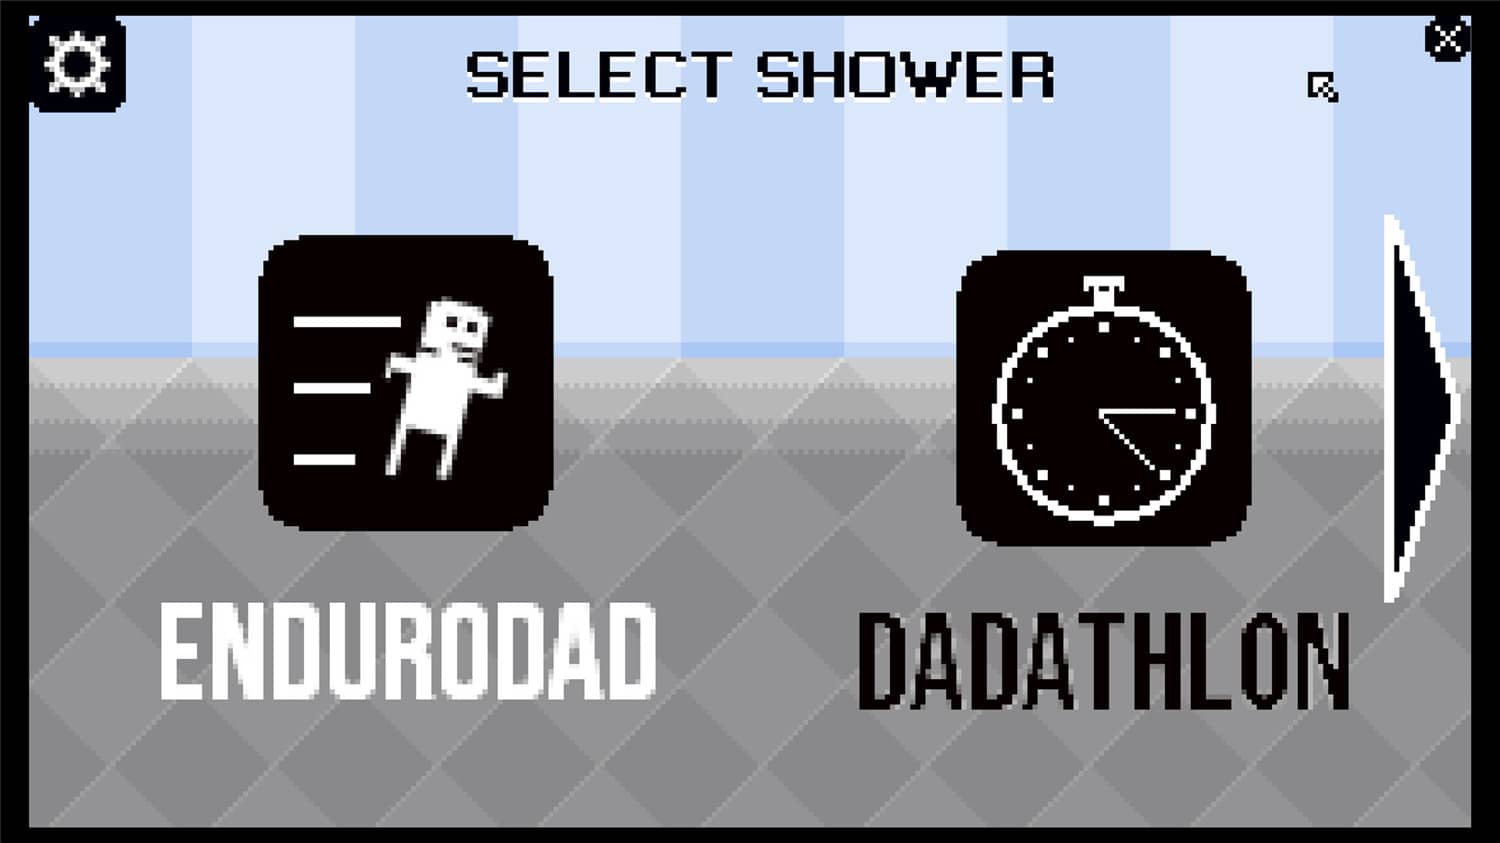 和爸爸一起洗澡模拟2015/Shower With Your Dad Simulator 2015: Do You Still Shower With Your Dad【Build.10027507|容量46MB|官方原版英文】